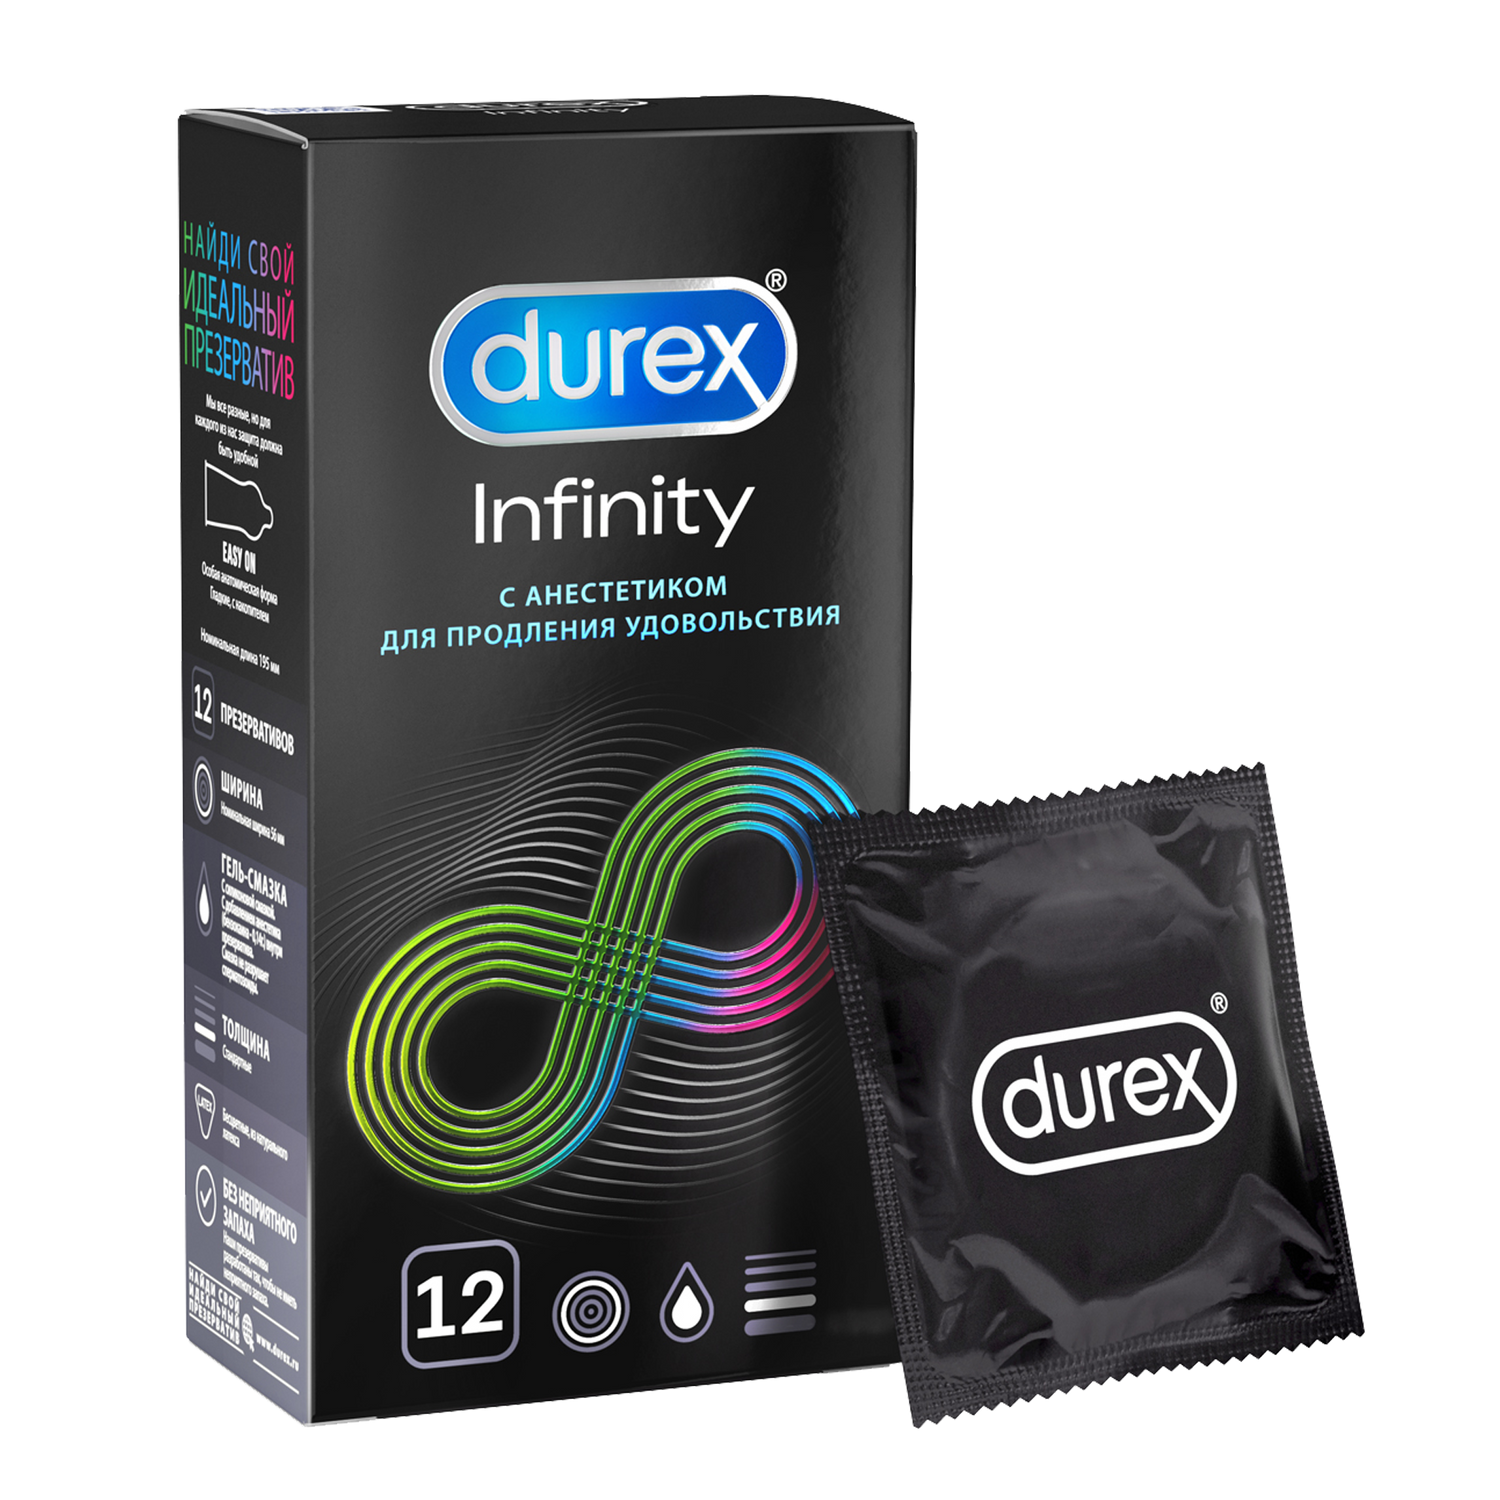 Презервативы Durex Infinity гладкие с анестетиком, 12 шт. презервативы durex infinity гладкие с анестетиком 12 шт